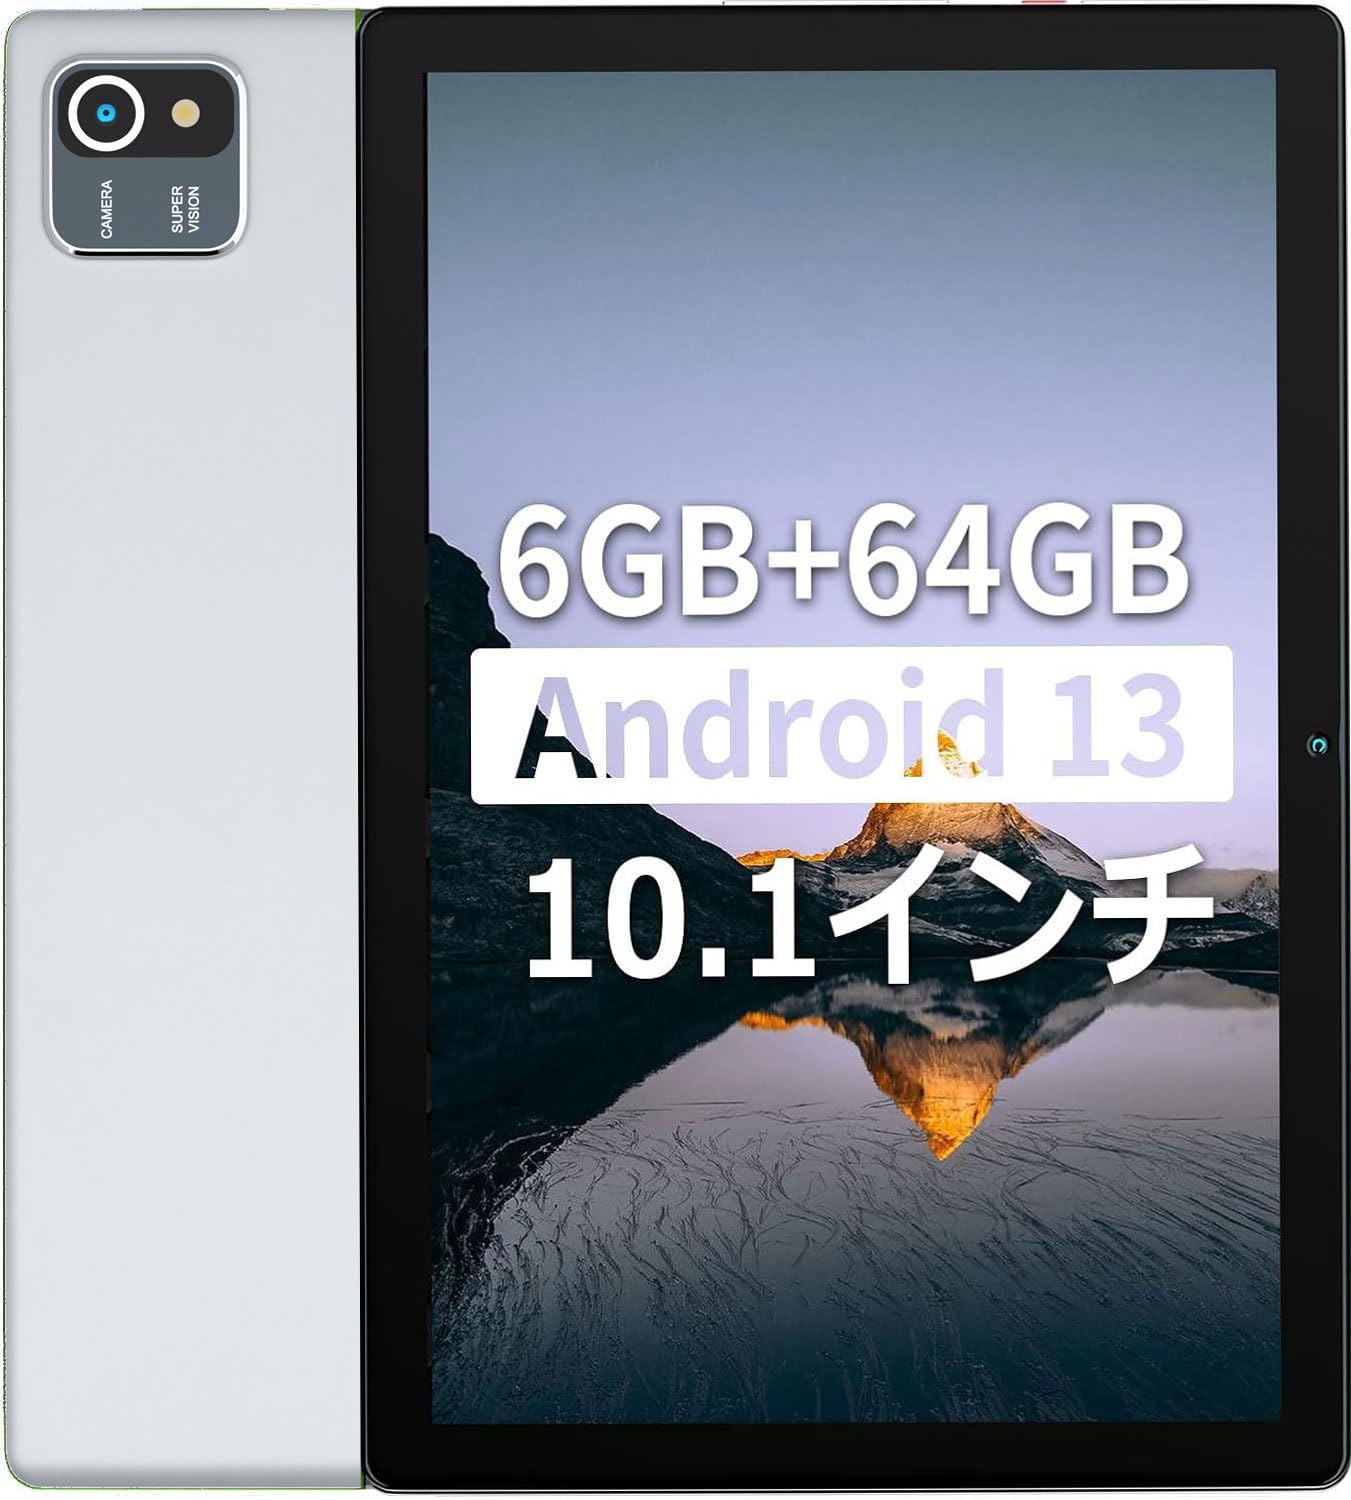 【6GB RAM+64GB ROM Android 13】HiGrace タブレット 10インチ wi-fiモデル 1TB拡張可能 、IPS 1280*800解像度 画面 5000mAh容量バッテリー 8MP/5MPカメラ 2.4G wifi Bluetooth GMS認証 Type-C充電/児童守護/3.5mmヘッドホン端子 日本語説明書付き